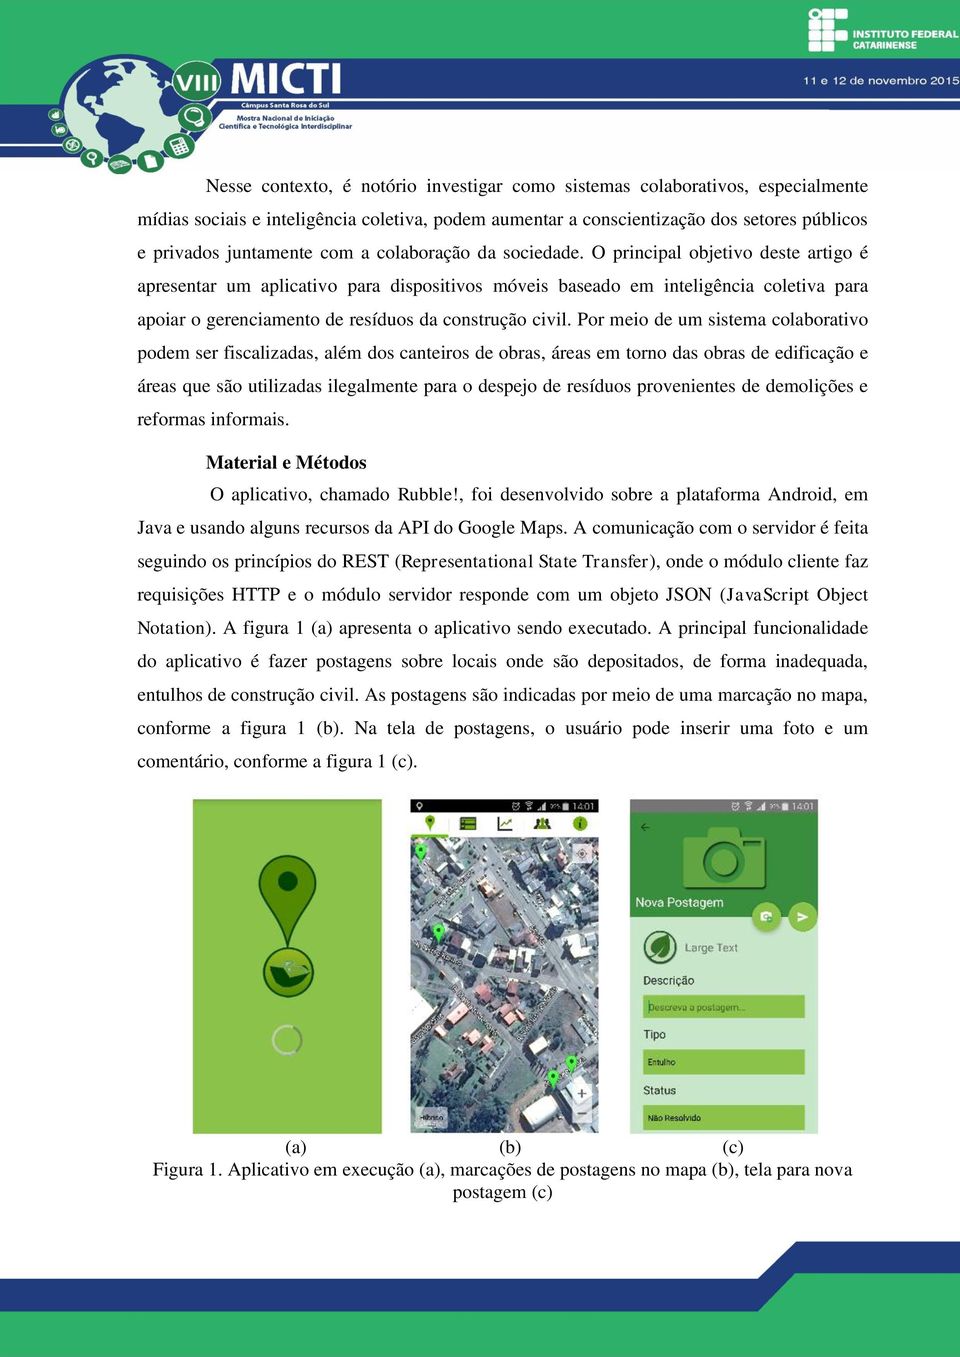 O principal objetivo deste artigo é apresentar um aplicativo para dispositivos móveis baseado em inteligência coletiva para apoiar o gerenciamento de resíduos da construção civil.